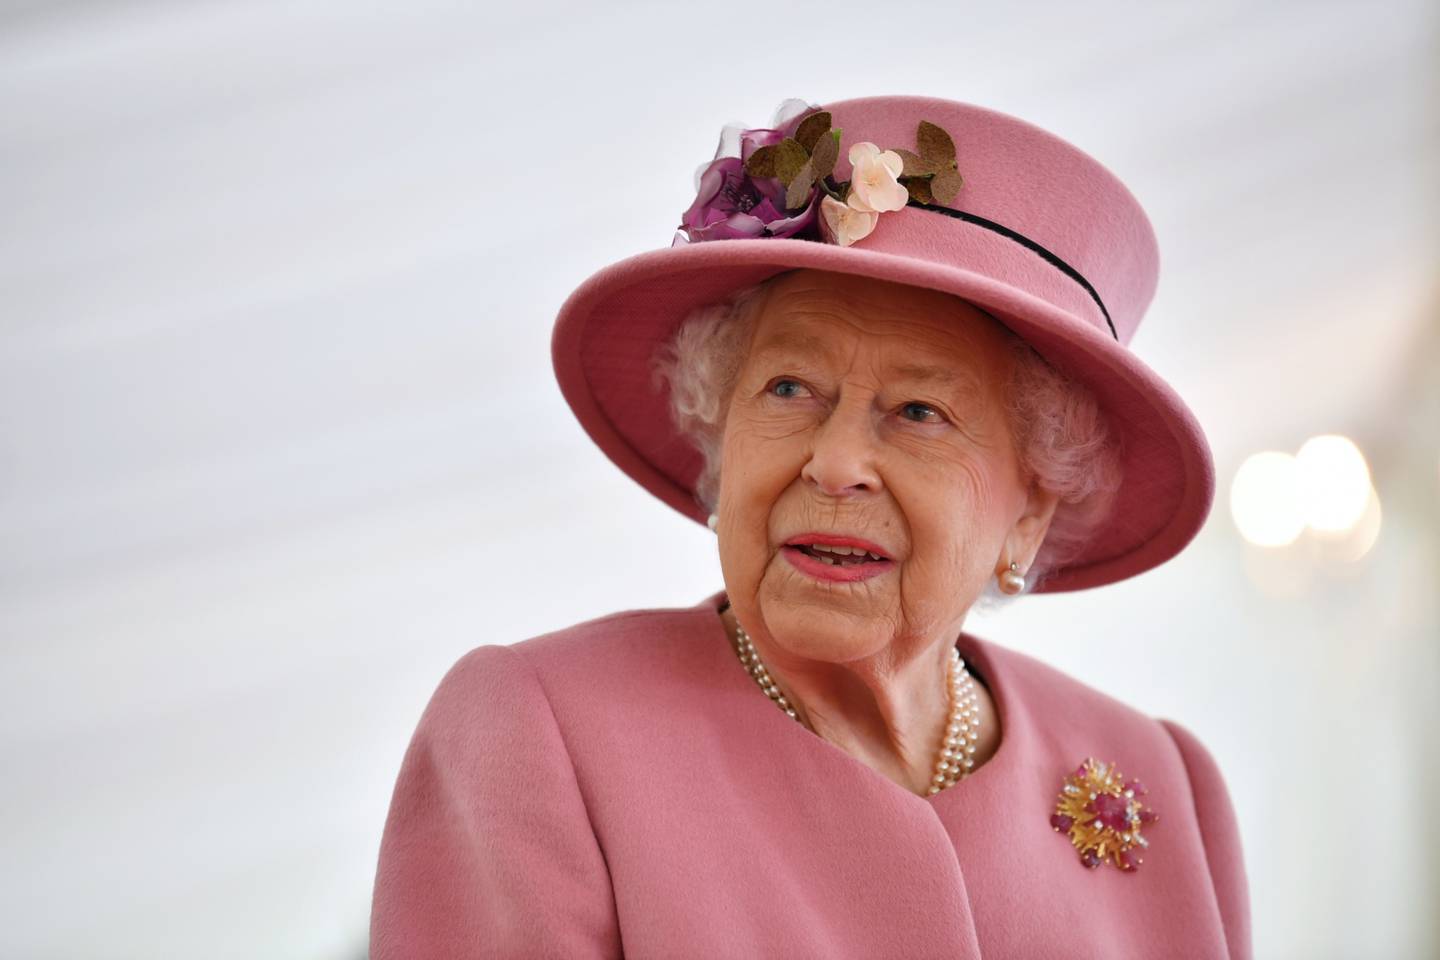 Monarca completa 70 anos de reinado em 2022 e país fará uma série de comemorações no próximo mês